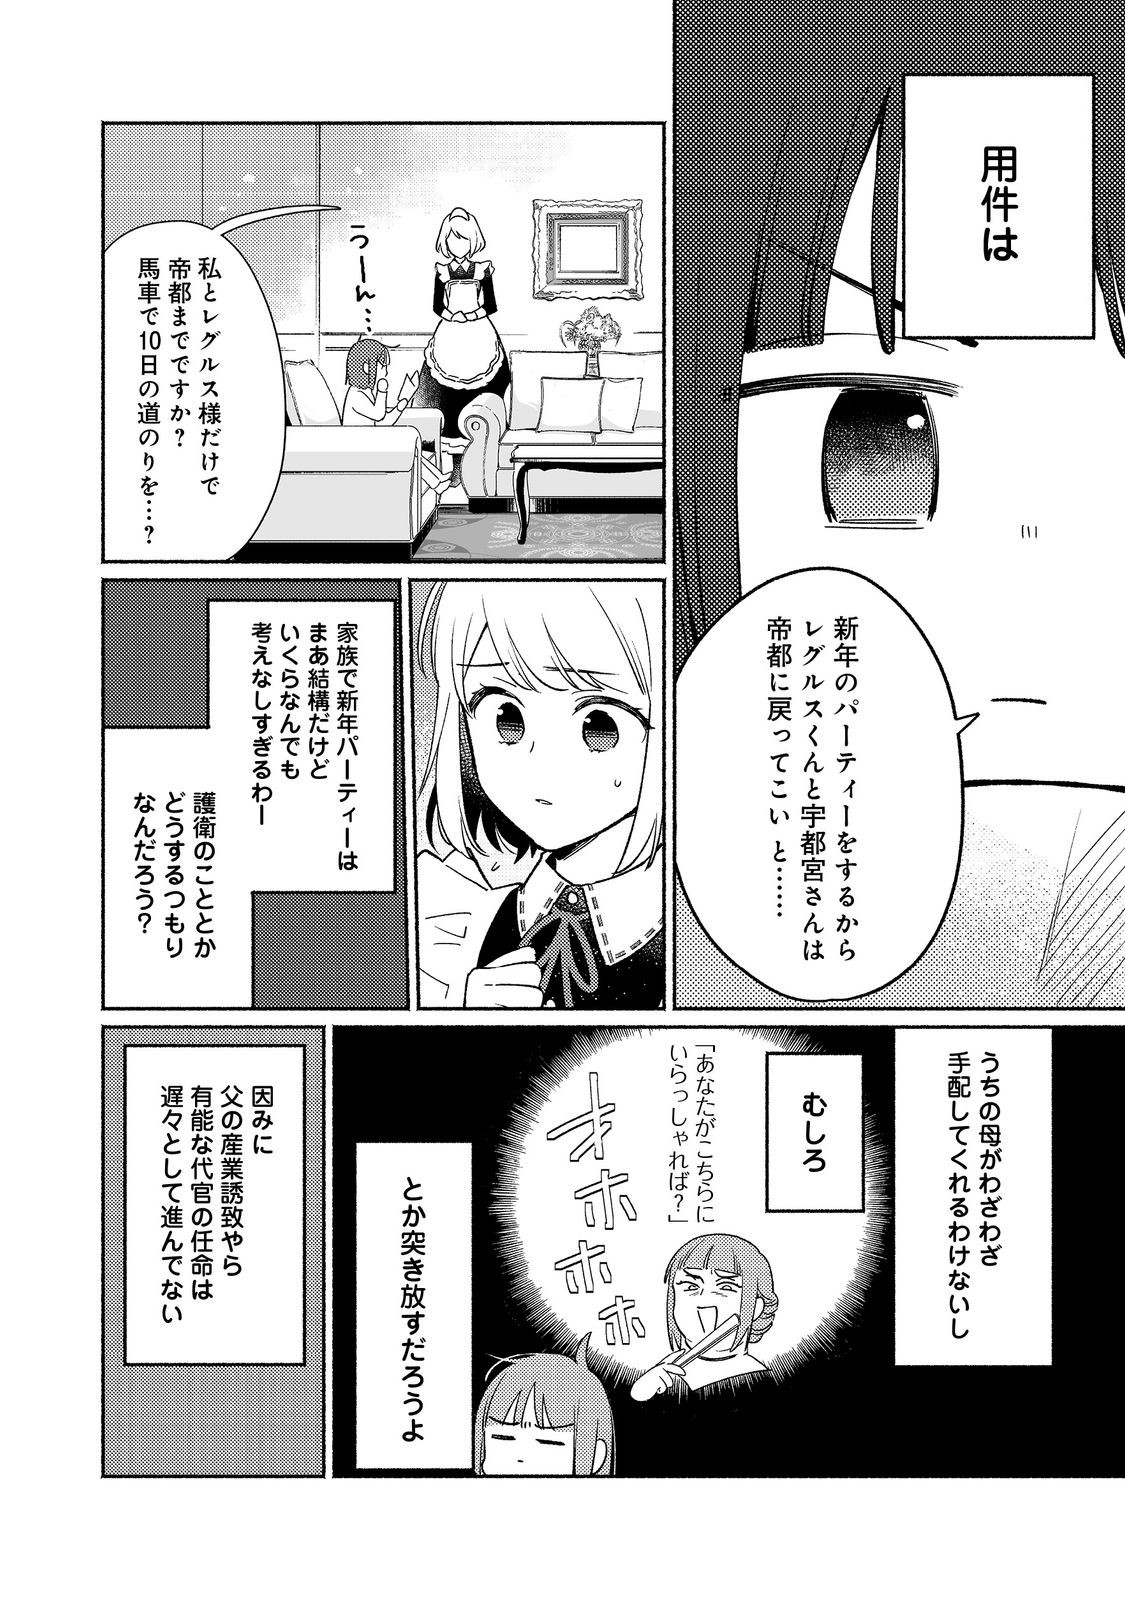 Shirobuta Kizoku desu ga Zense no Kioku ga Haeta node Hiyoko na Otouto Sodatemasu - Chapter 24.2 - Page 2